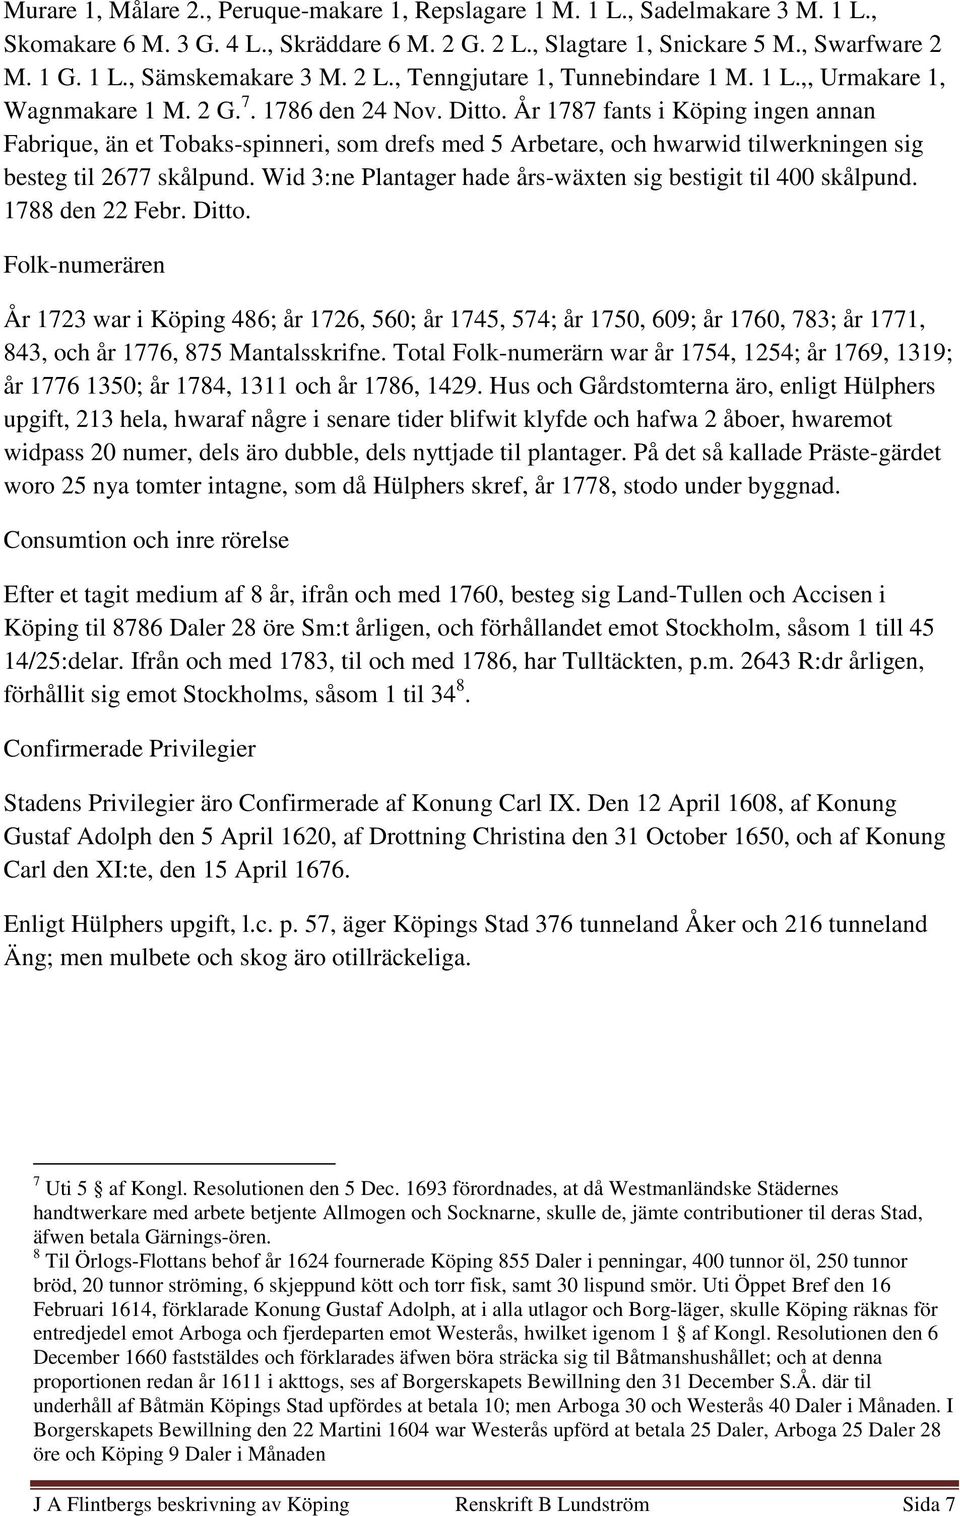 År 1787 fants i Köping ingen annan Fabrique, än et Tobaks-spinneri, som drefs med 5 Arbetare, och hwarwid tilwerkningen sig besteg til 2677 skålpund.